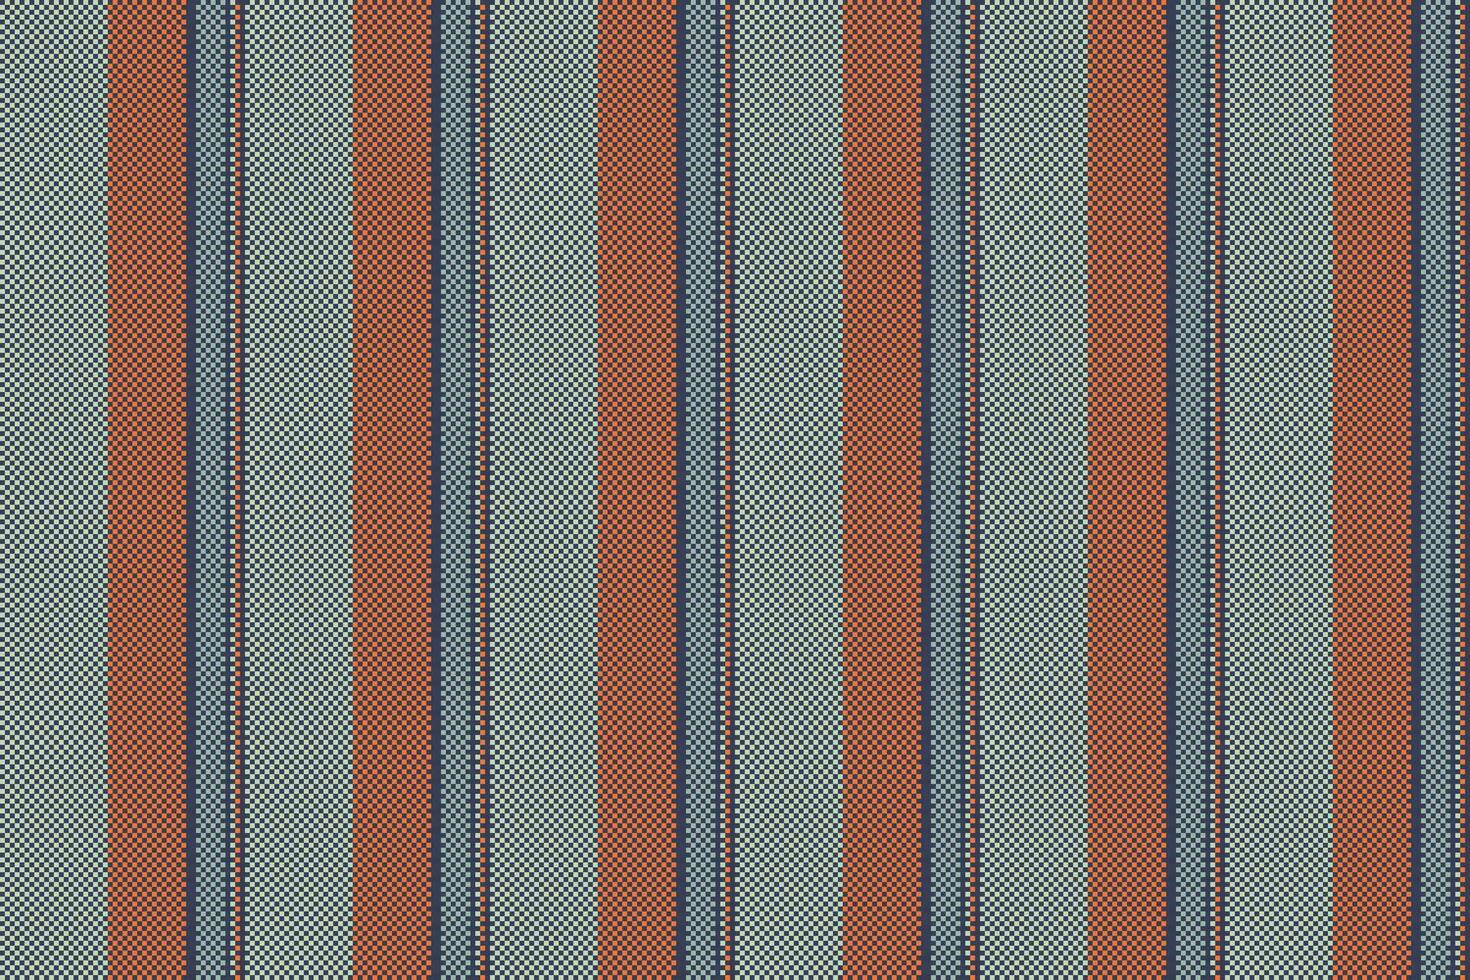 tyg bakgrund rader av textil- vektor textur med en mönster rand sömlös vertikal.